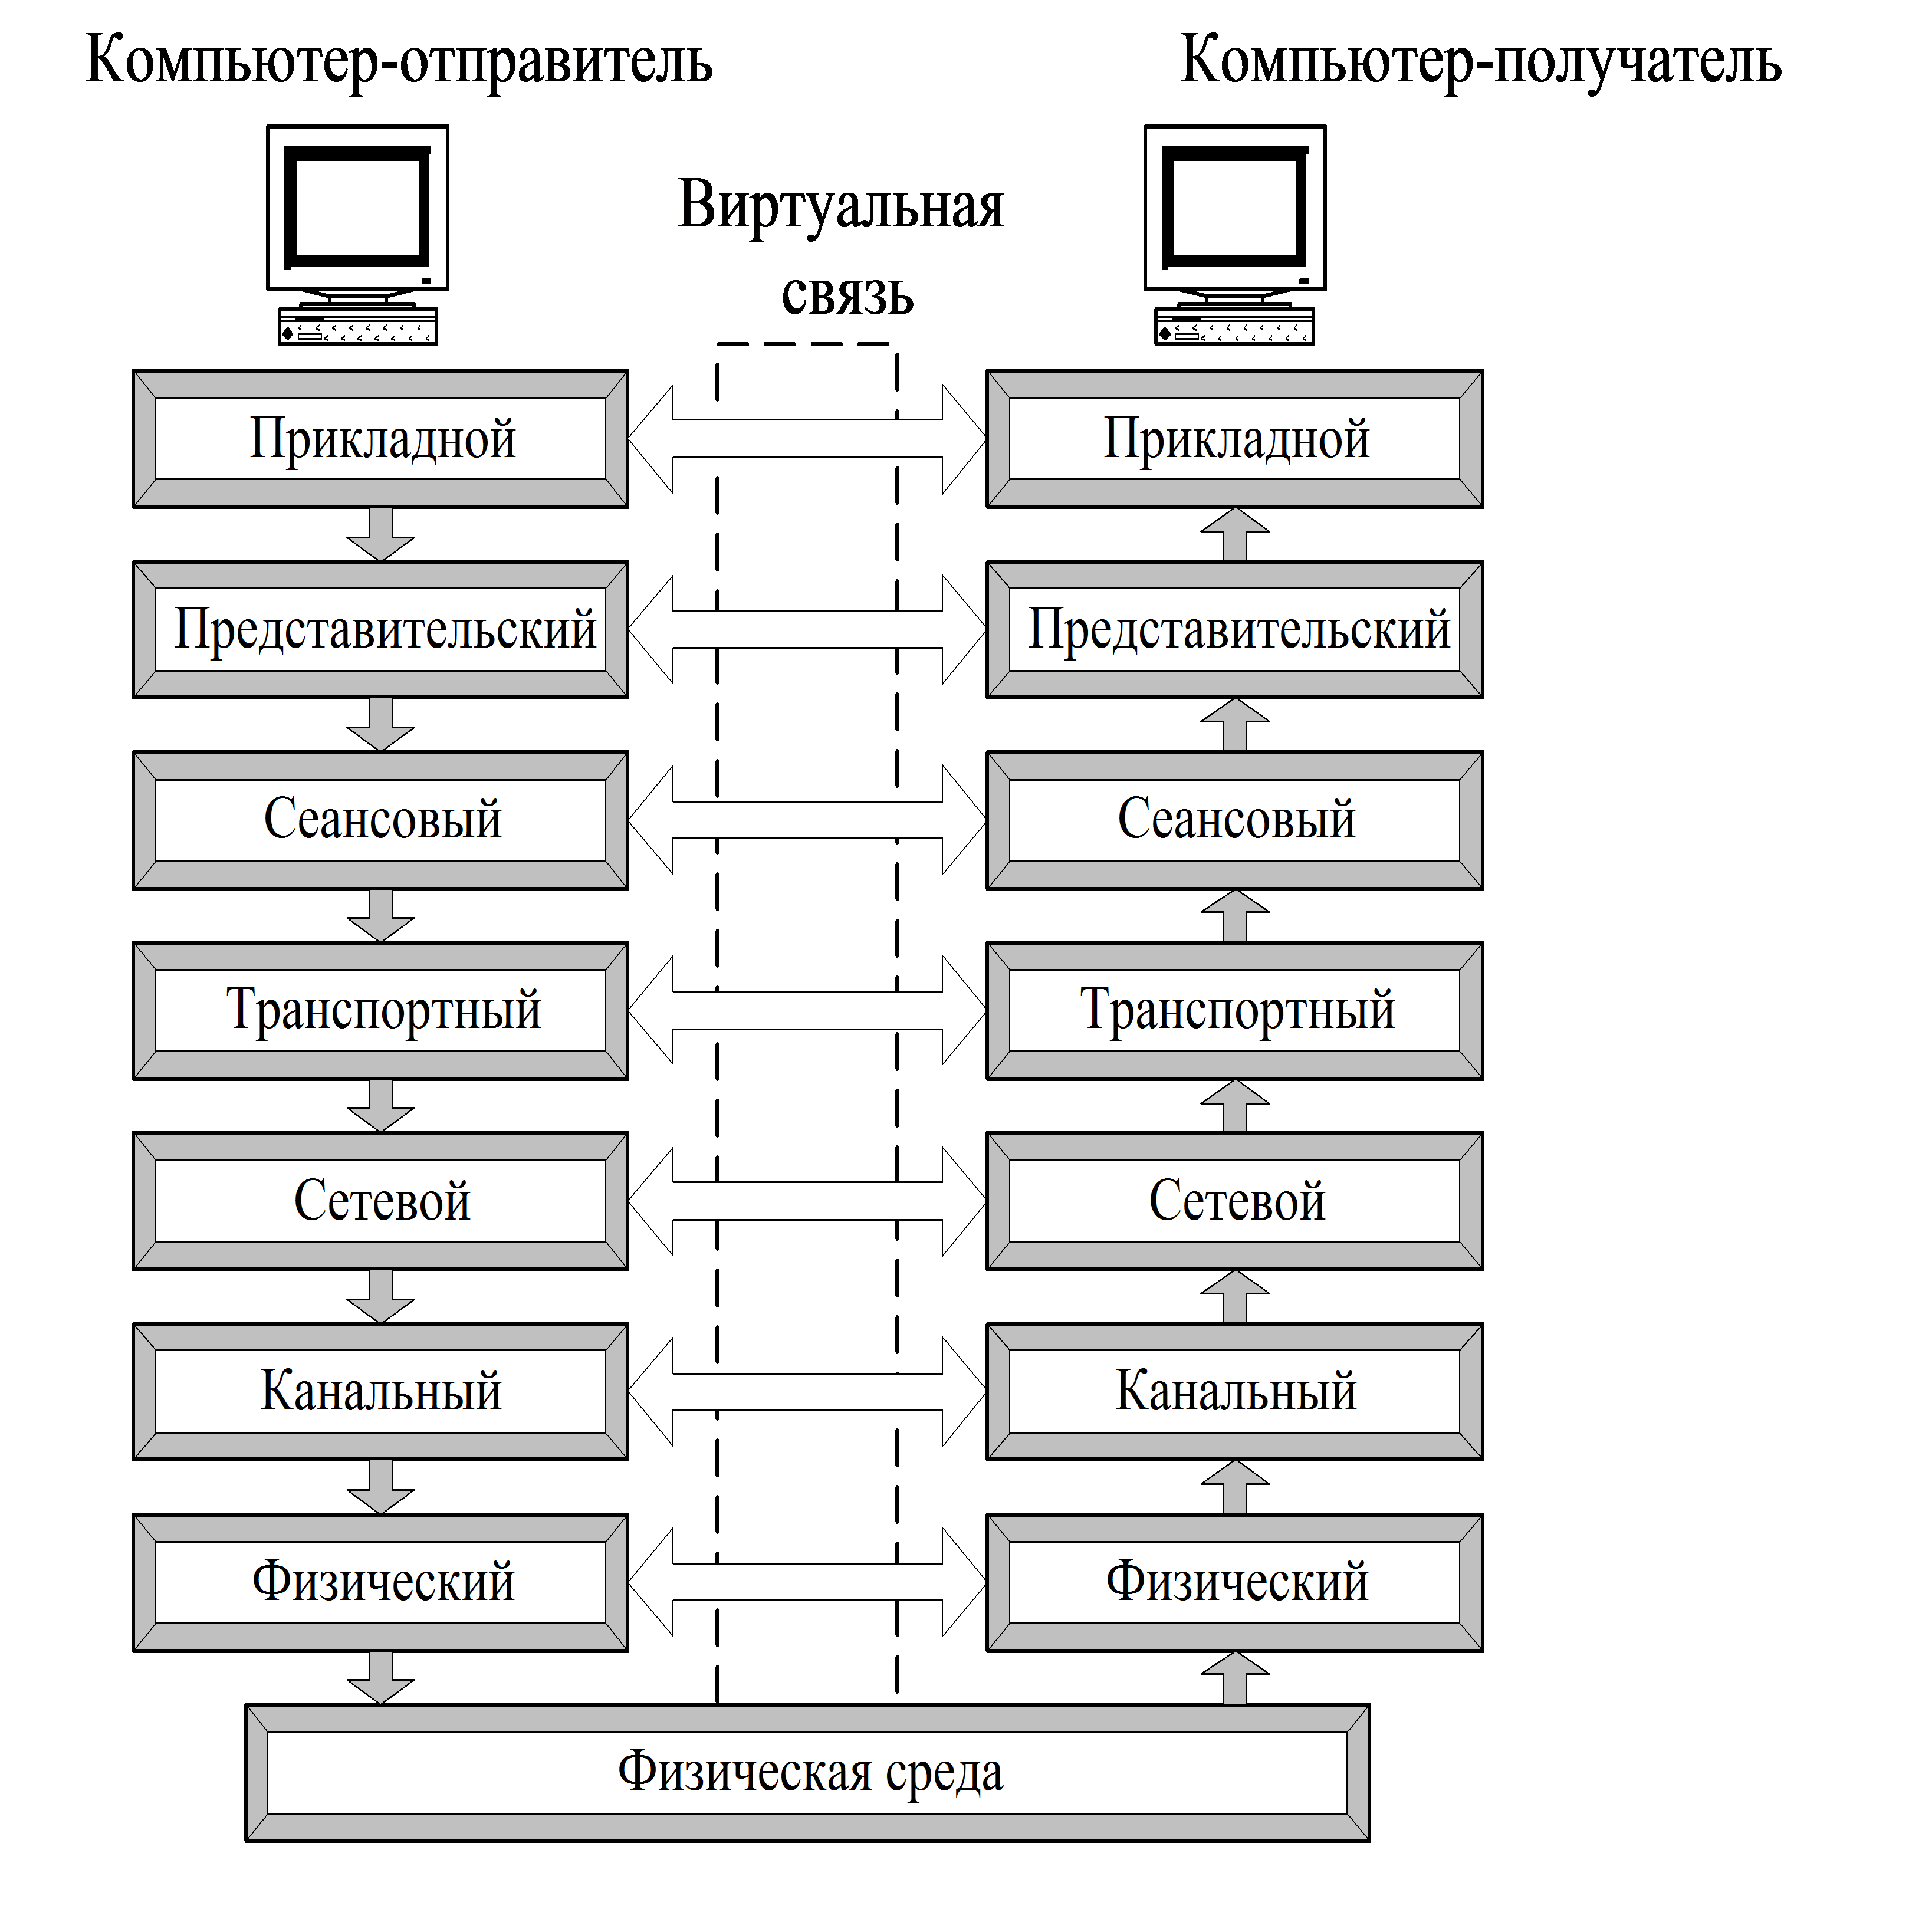 Модели взаимодействия открытых систем» (osi уровни. Схема взаимодействия компьютеров в базовой эталонной модели osi. Уровни эталонной модели сетевого взаимодействия osi. Модель взаимодействия открытых систем ISO/osi.